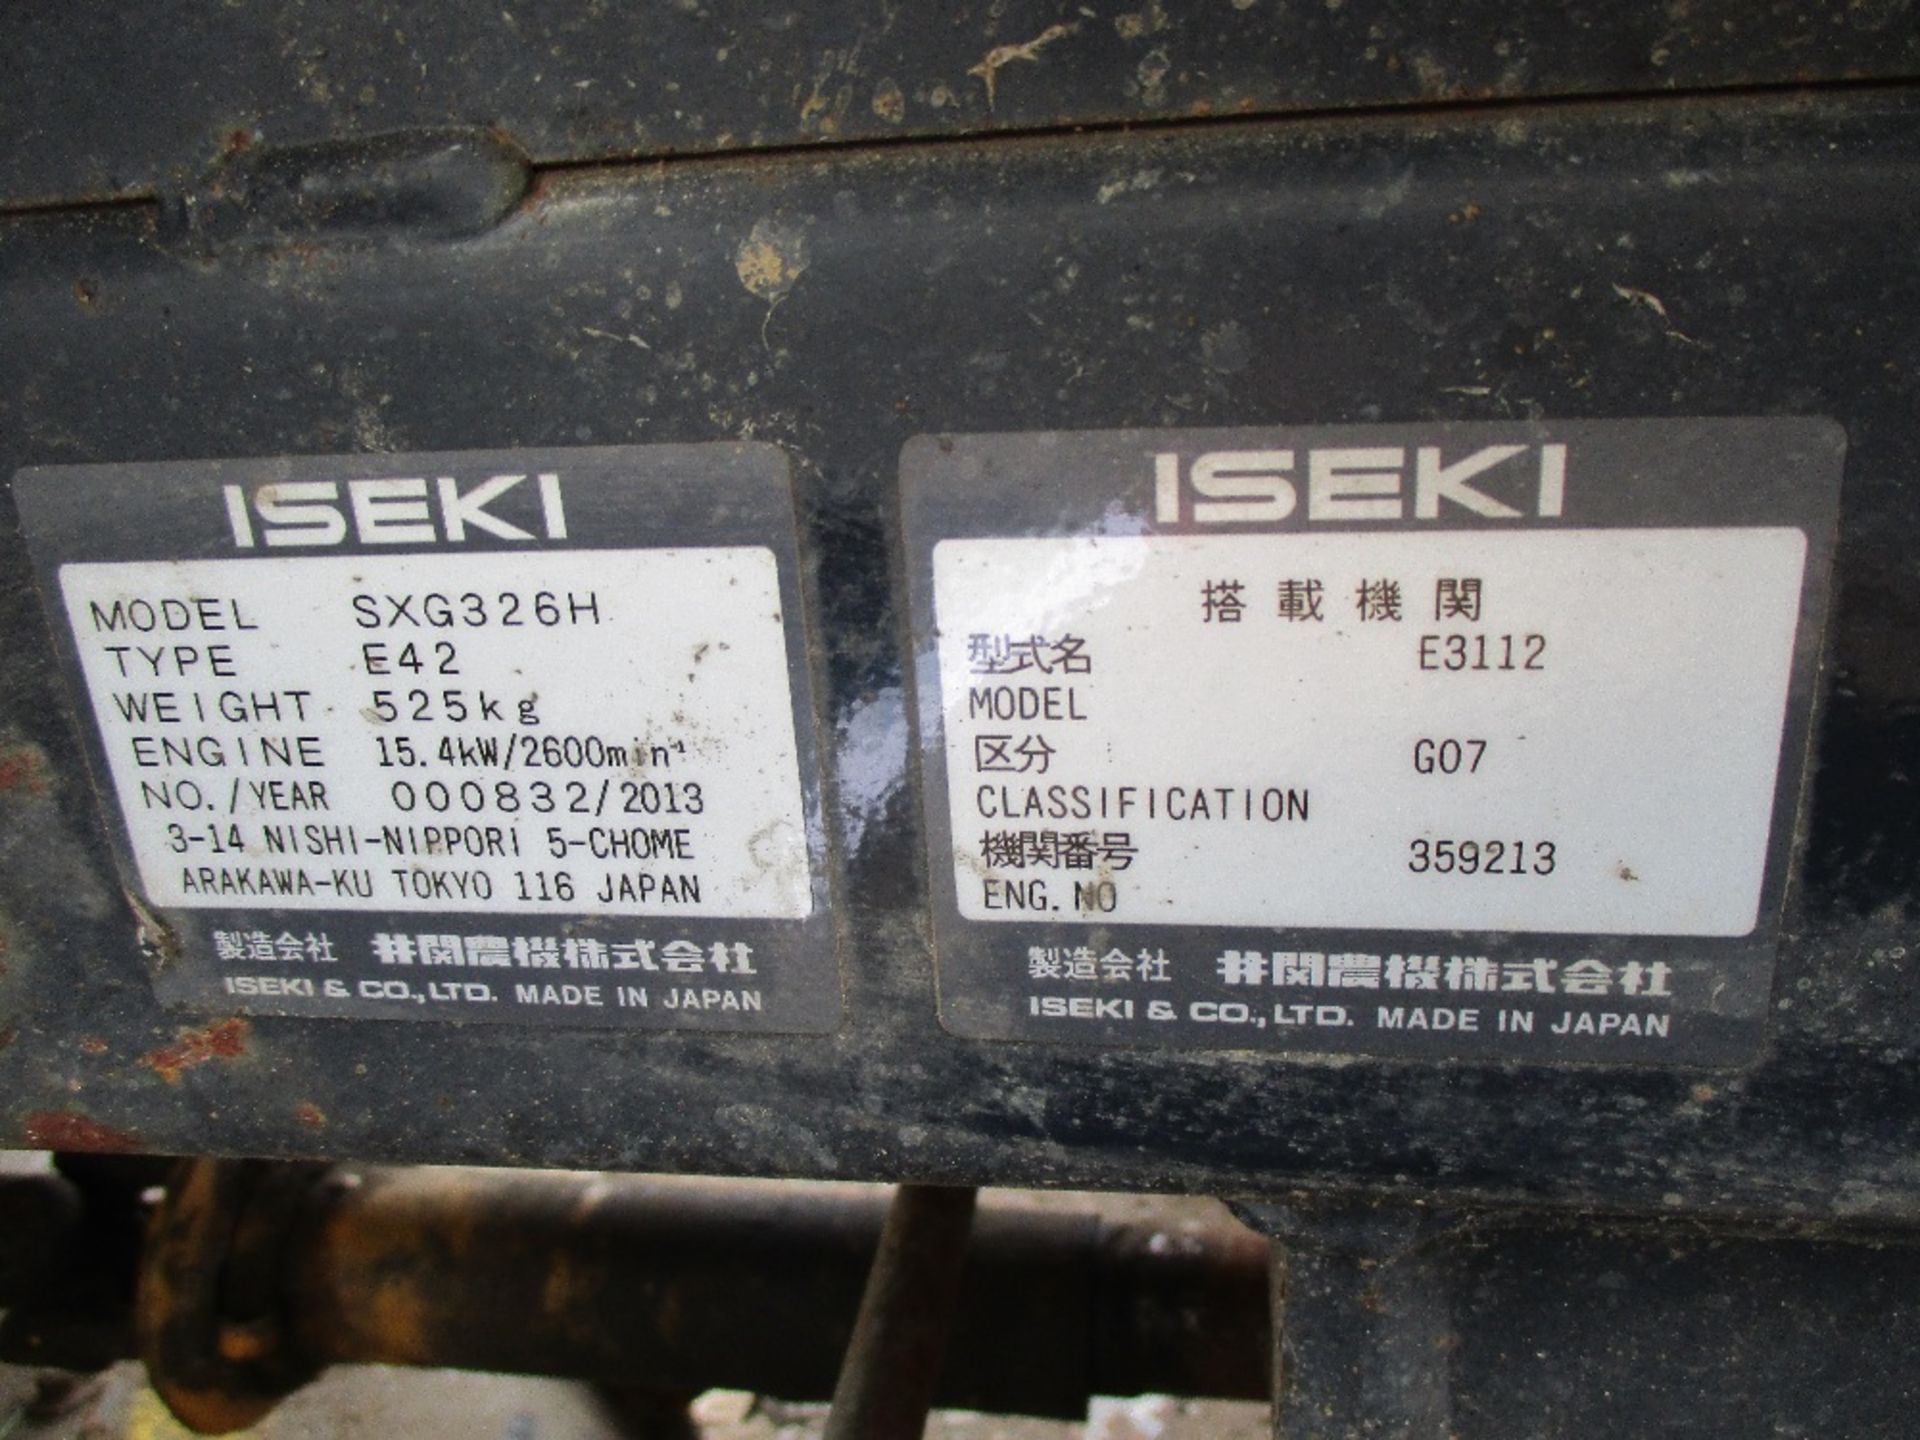 ISEKI SXG326 DIESEL RIDE ON MOWER YEAR 2013 - Image 4 of 5